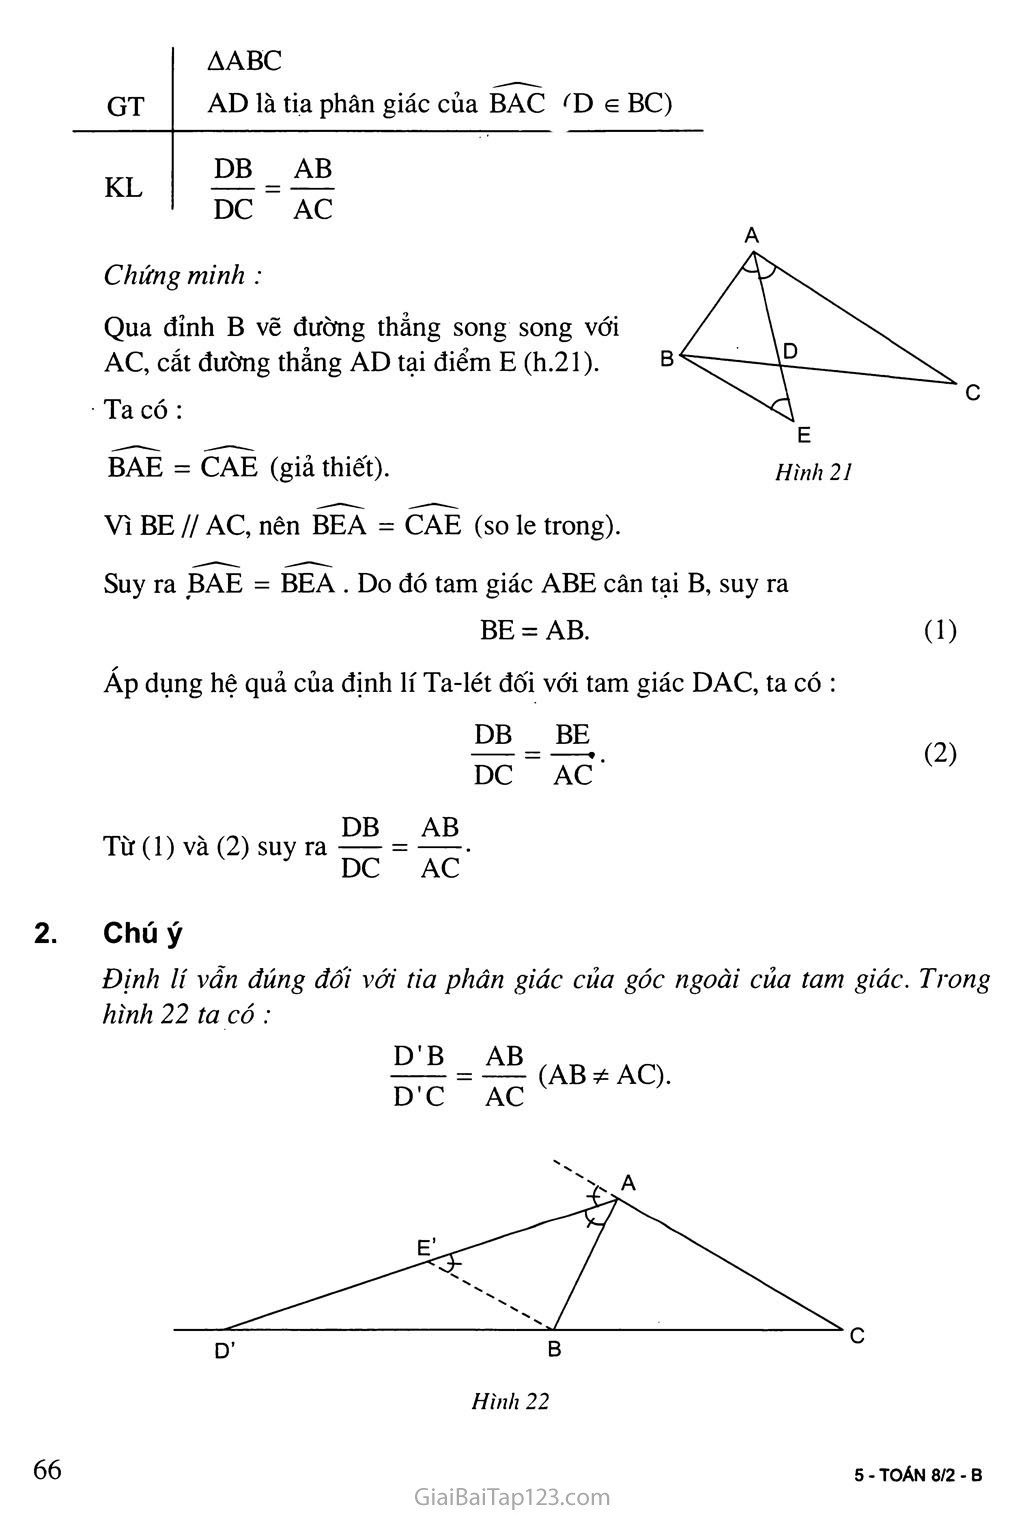 Bài 3. Tính chất đường phân giác của tam giác trang 2